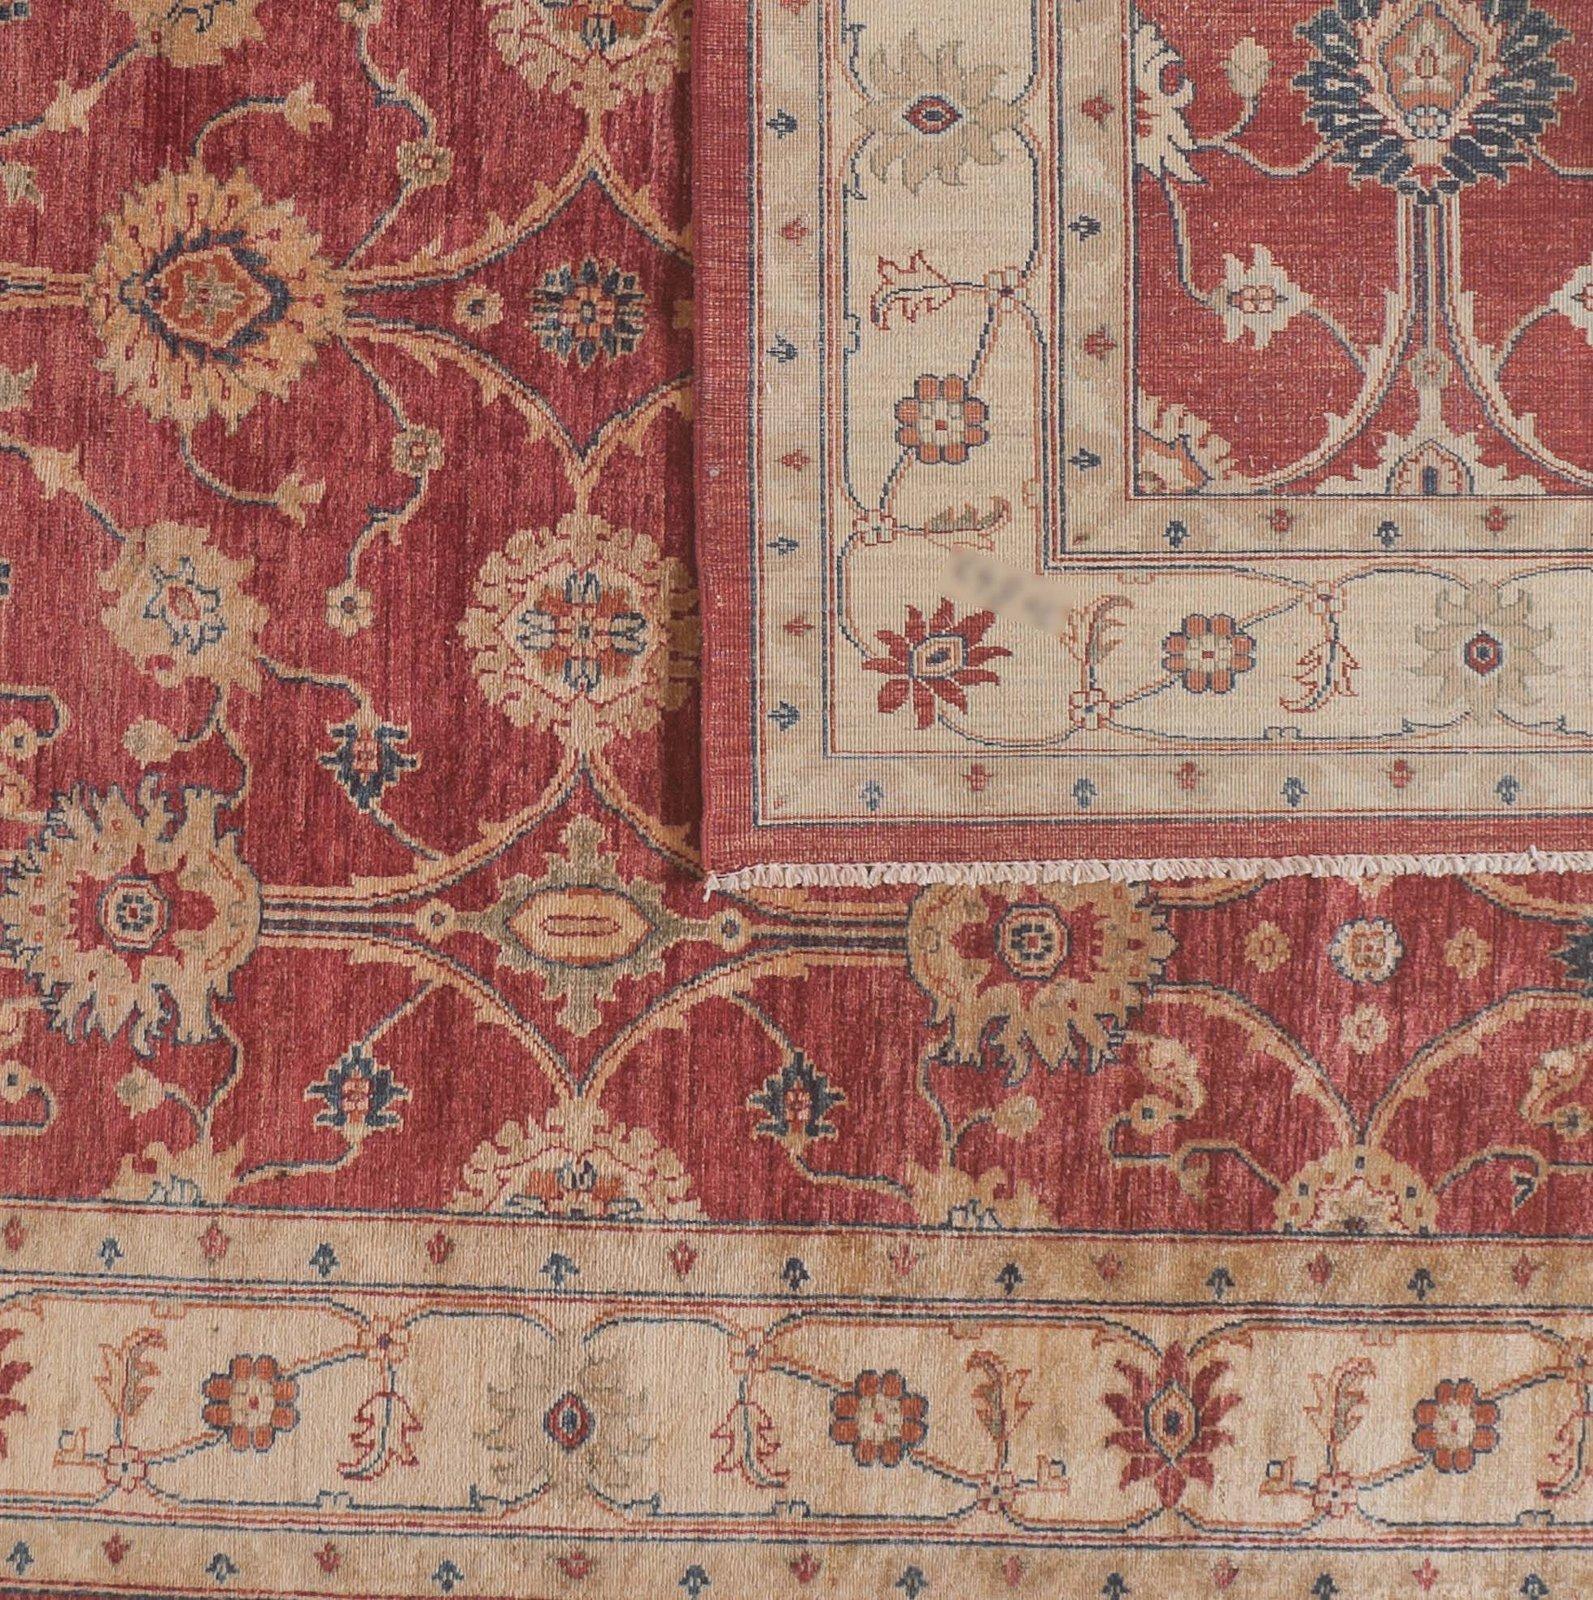 Tealfarbene Linien und Blätter verleihen diesem traditionellen pakistanischen Blumenteppich in Rot und Beige ein unverwechselbares Farbelement. Wolle. Handgeknüpft in Pakistan unter Verwendung pflanzlicher Farbstoffe.